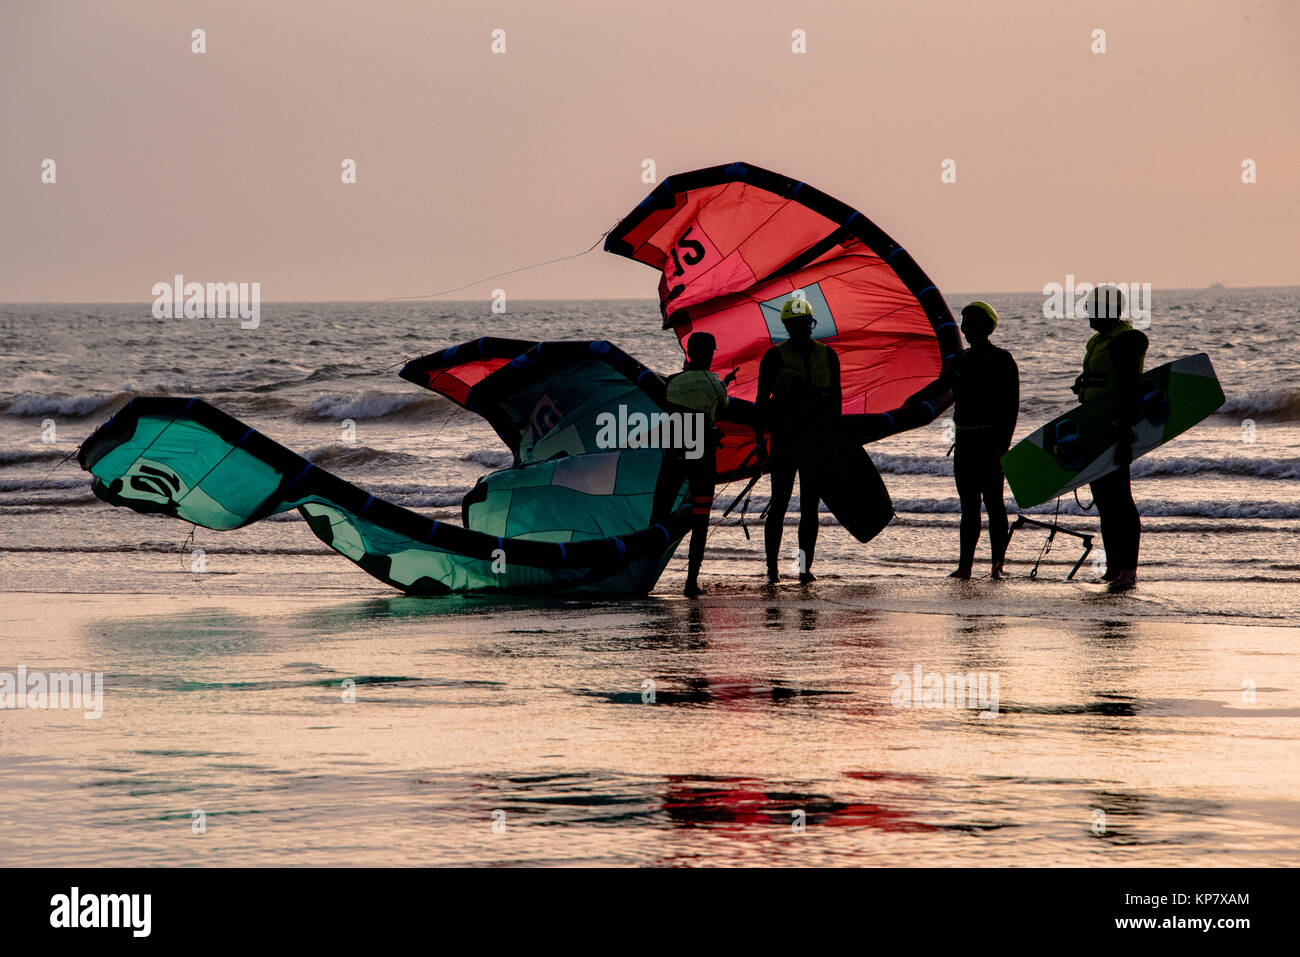 Le kite surf et surf au coucher du soleil Banque D'Images